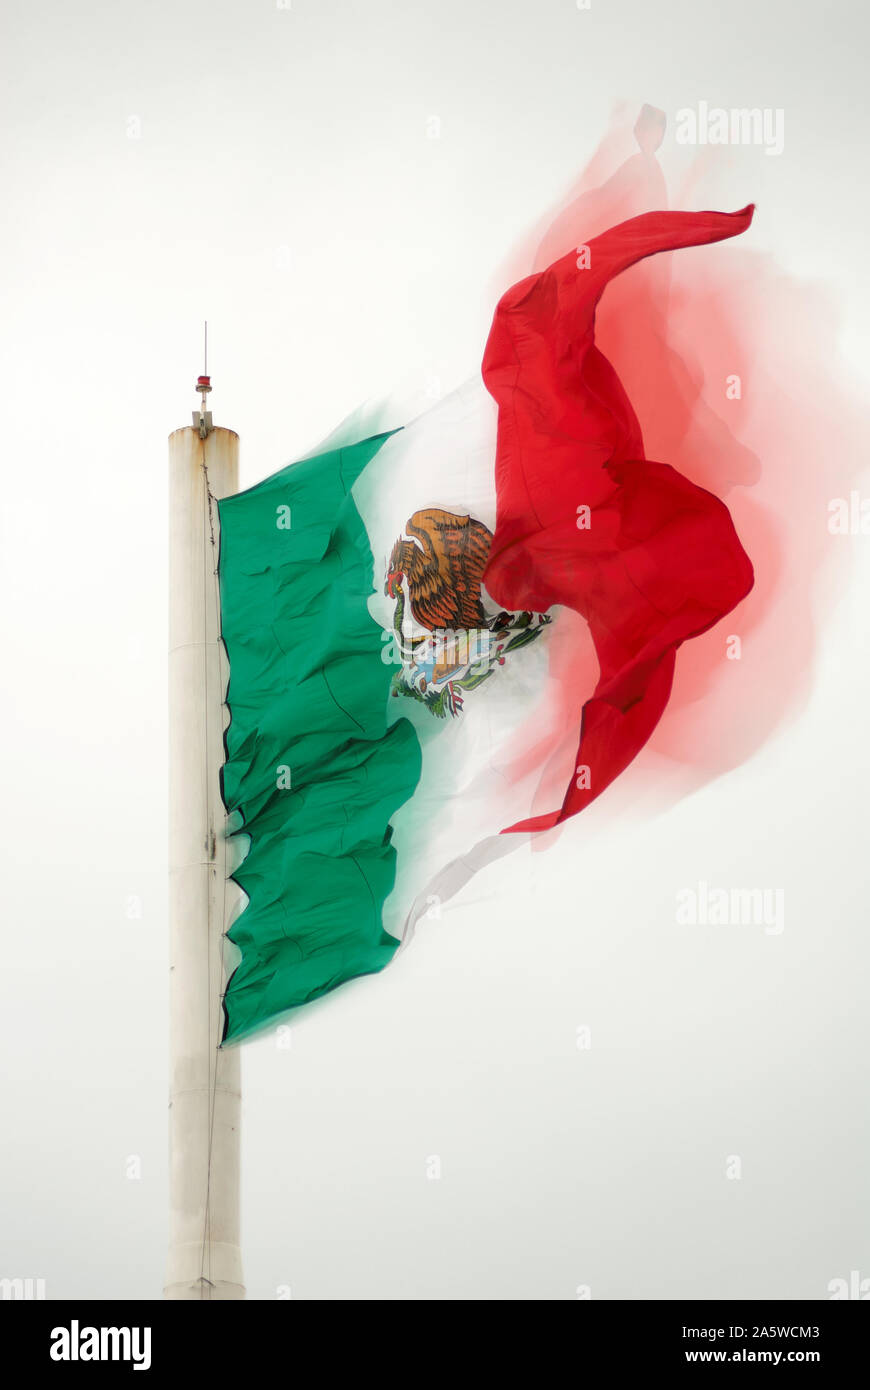 Coatzacoalcos, Veracruz, Mexiko - 15. Mai 2014: mexikanische Flagge schwenkten unter starken Winden Stockfoto